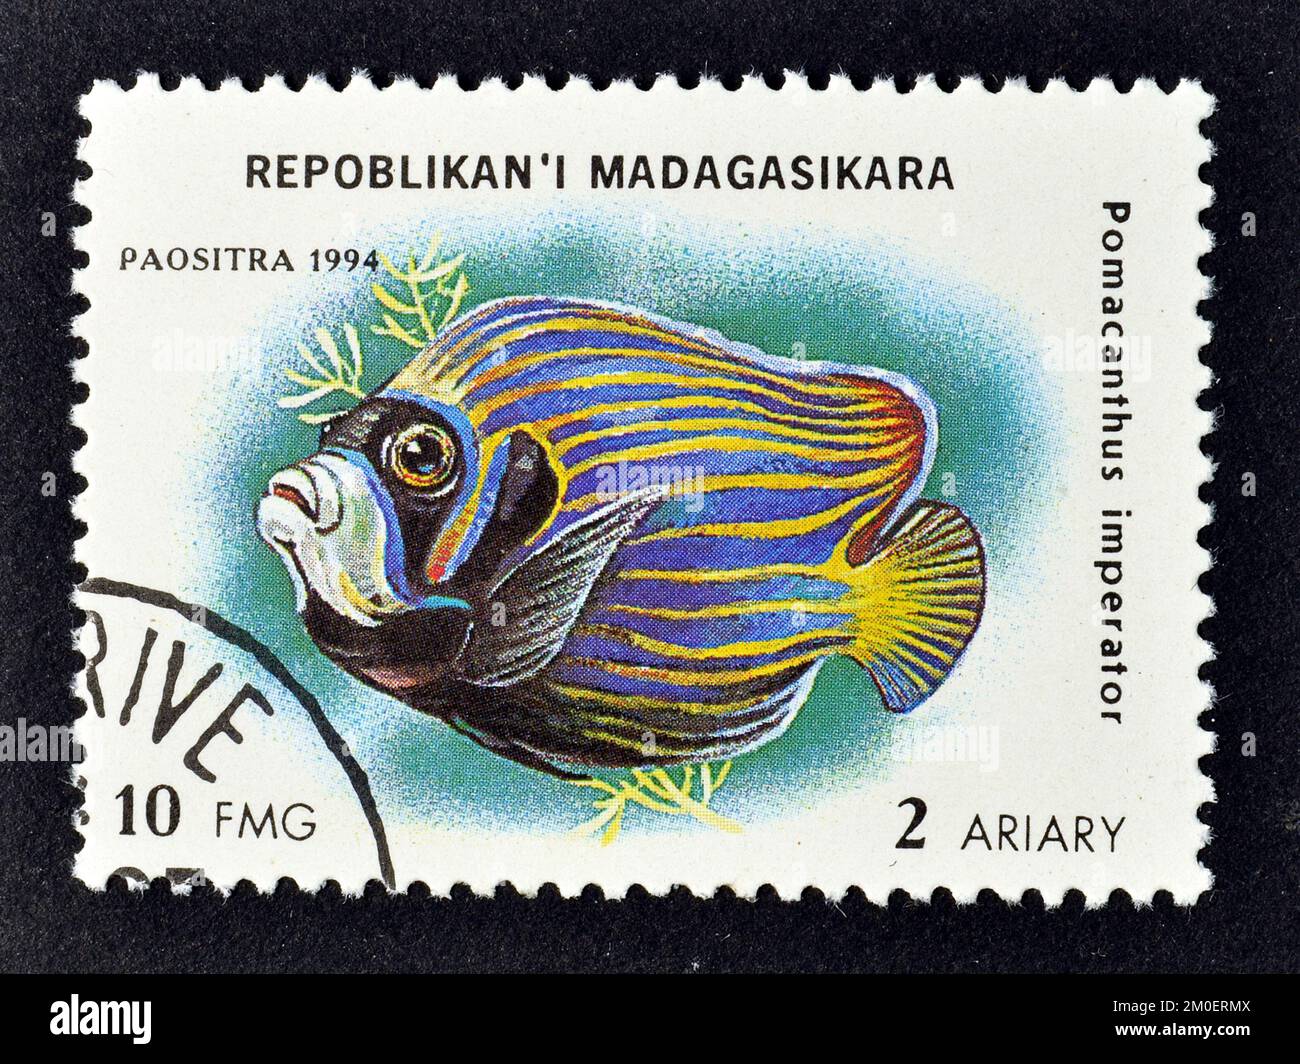 Timbre-poste annulé imprimé par Madagascar, qui montre l'empereur Angelfish (imperméable de Pomacanthus), vers 1994. Banque D'Images